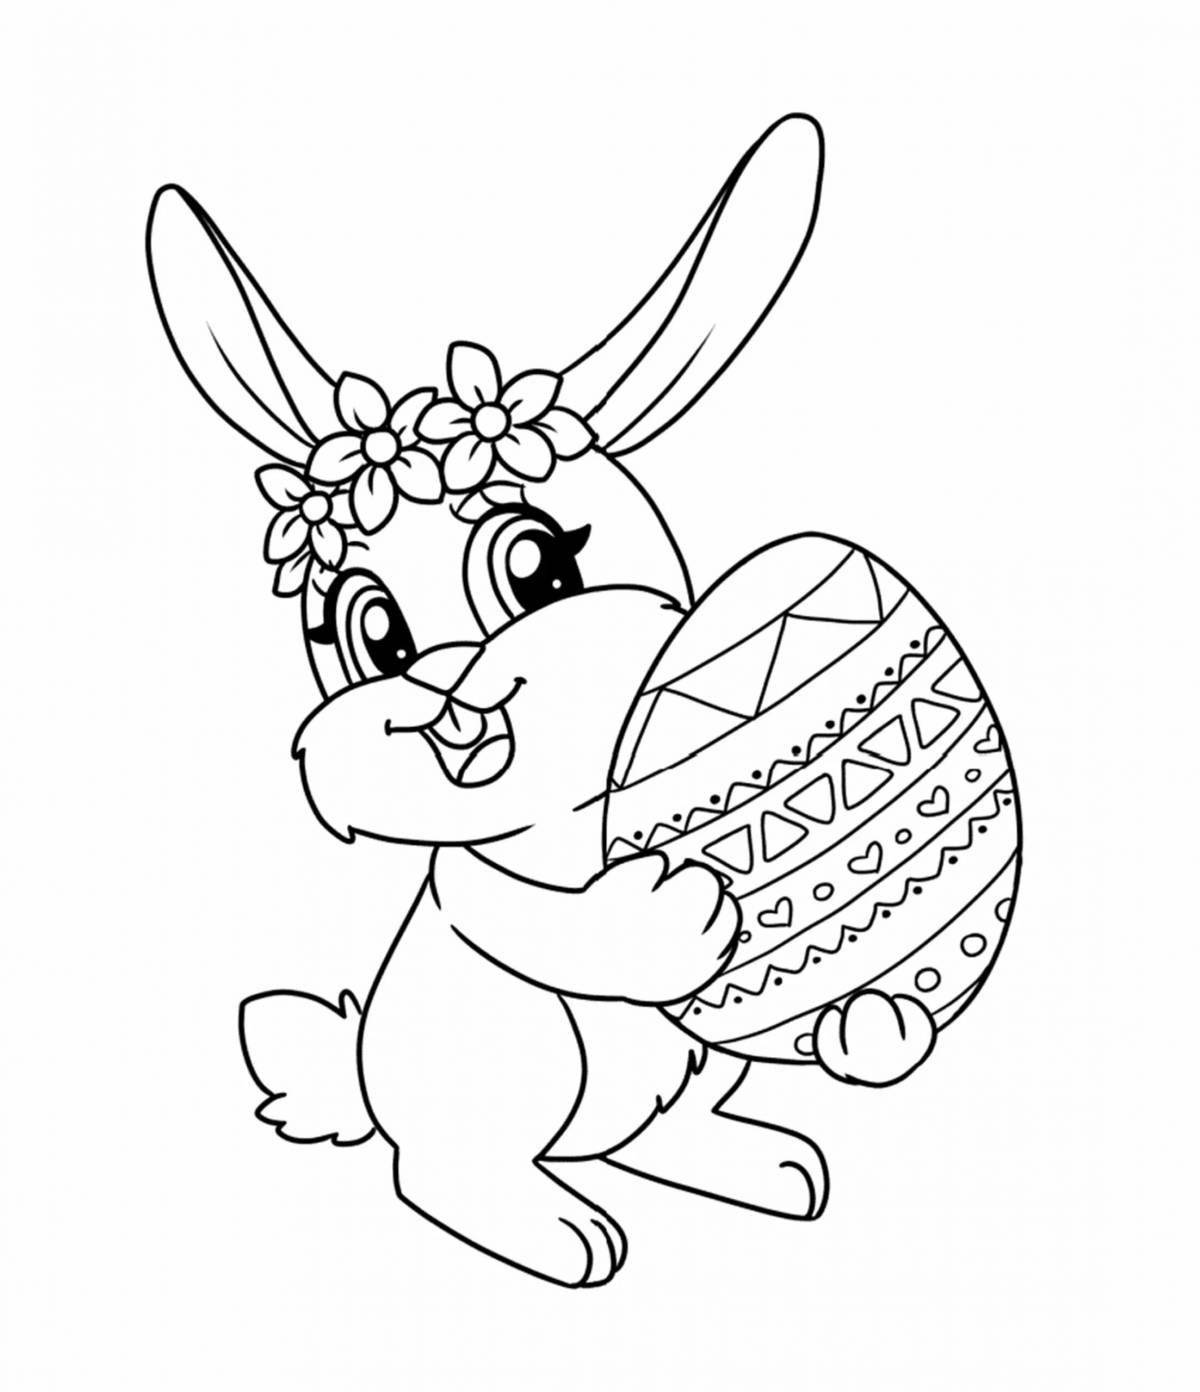 A fun rabbit coloring book